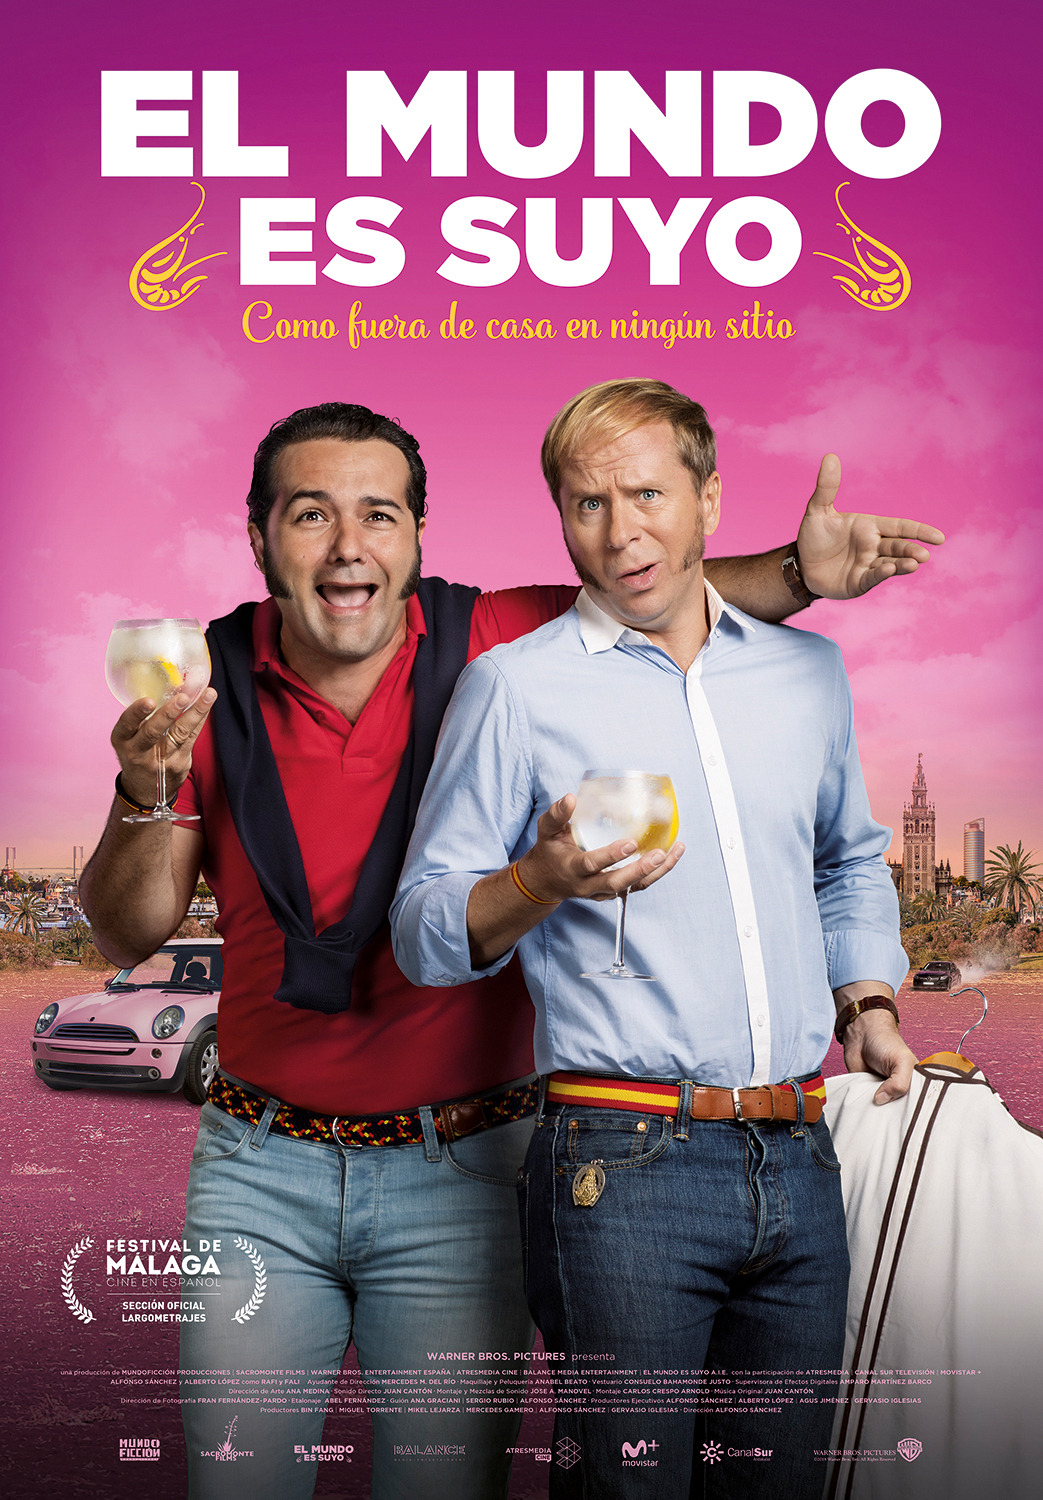 Extra Large Movie Poster Image for El mundo es suyo (#3 of 4)